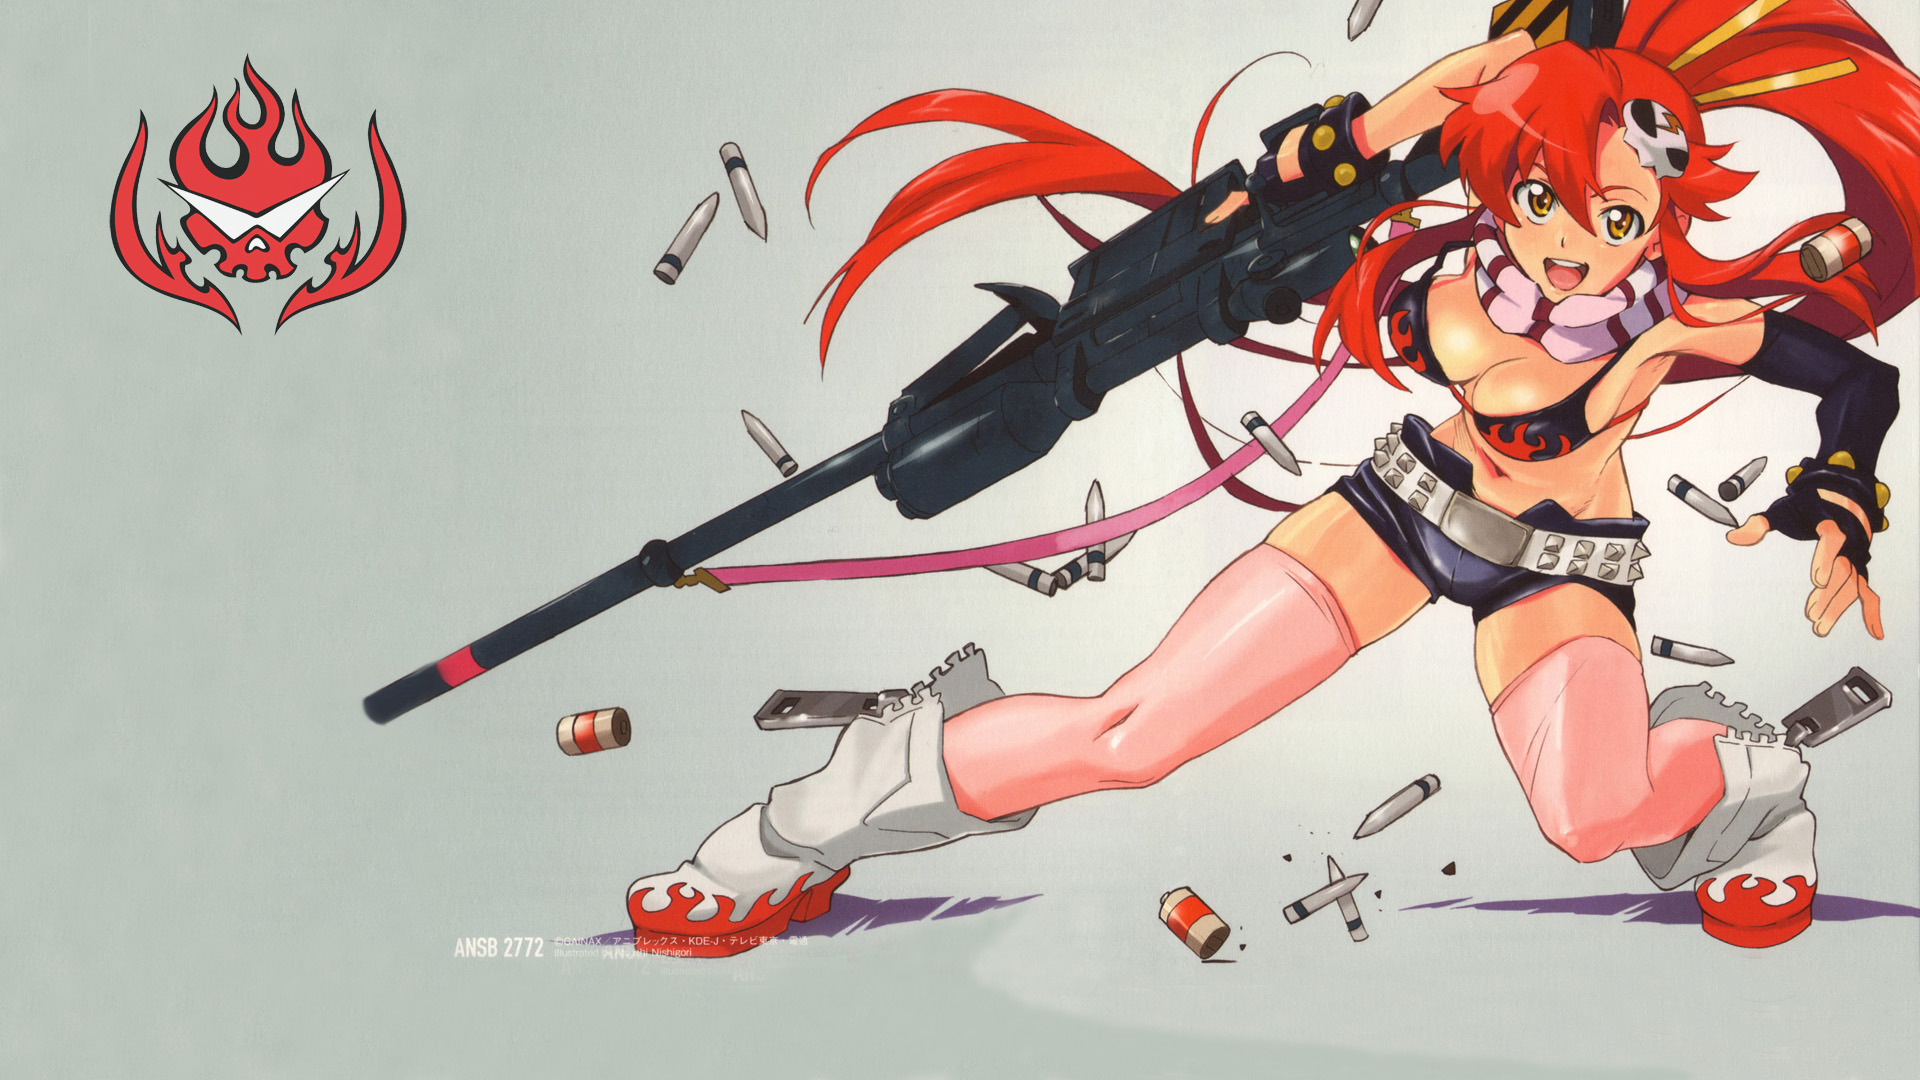 Anime Bikini Boots Bullet Girl Gun Long Hair Red Hair Scarf Shorts Sniper Rifle Tengen Toppa Gurren  1920x1080